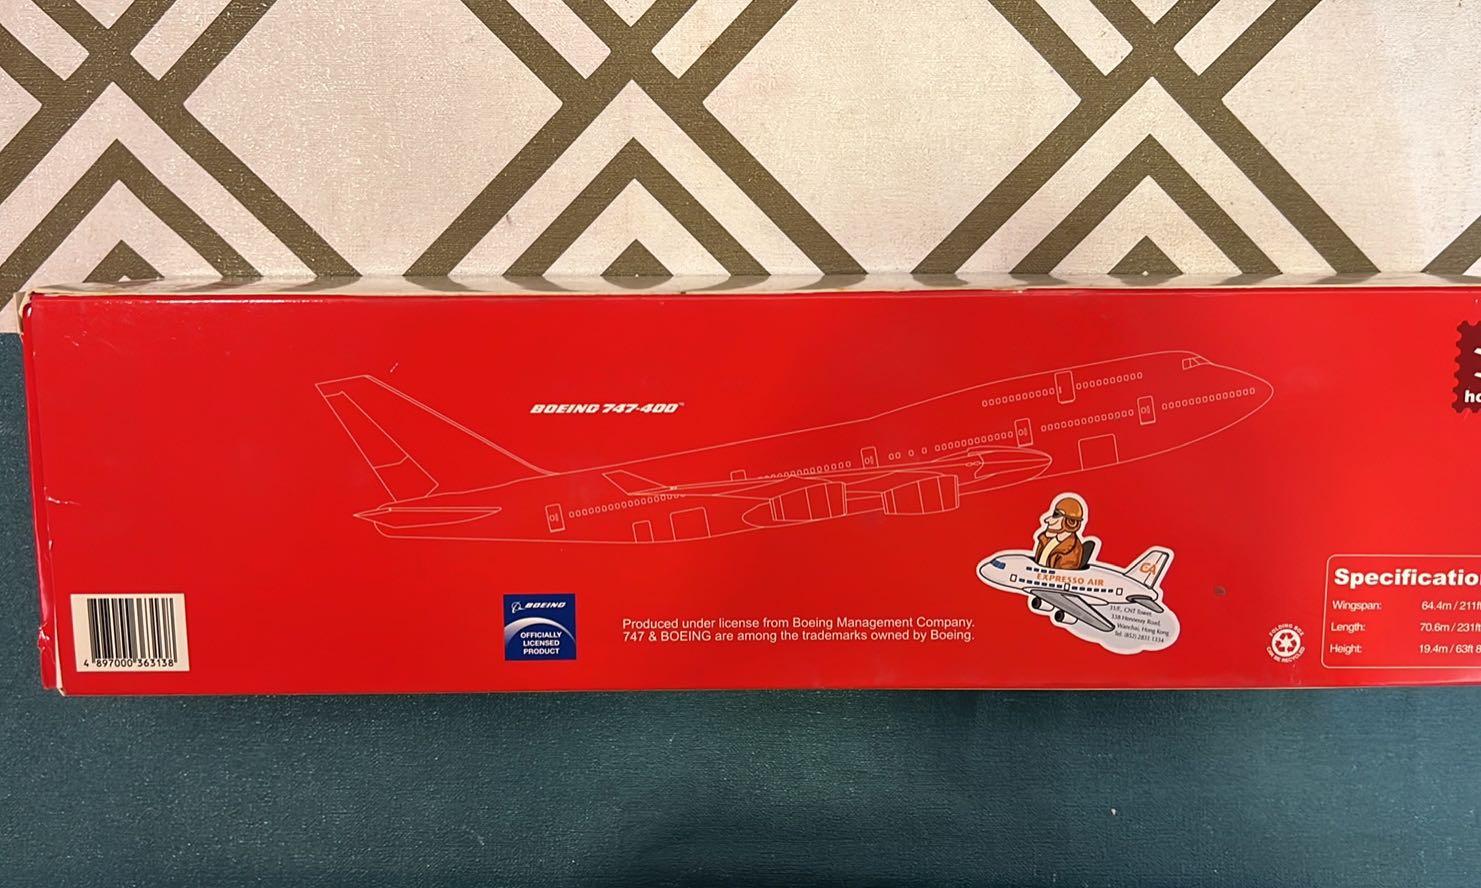 甘泉航空波音OASiS HONG KONG AIRLINES BOEING 747 - 400 1:200 模型